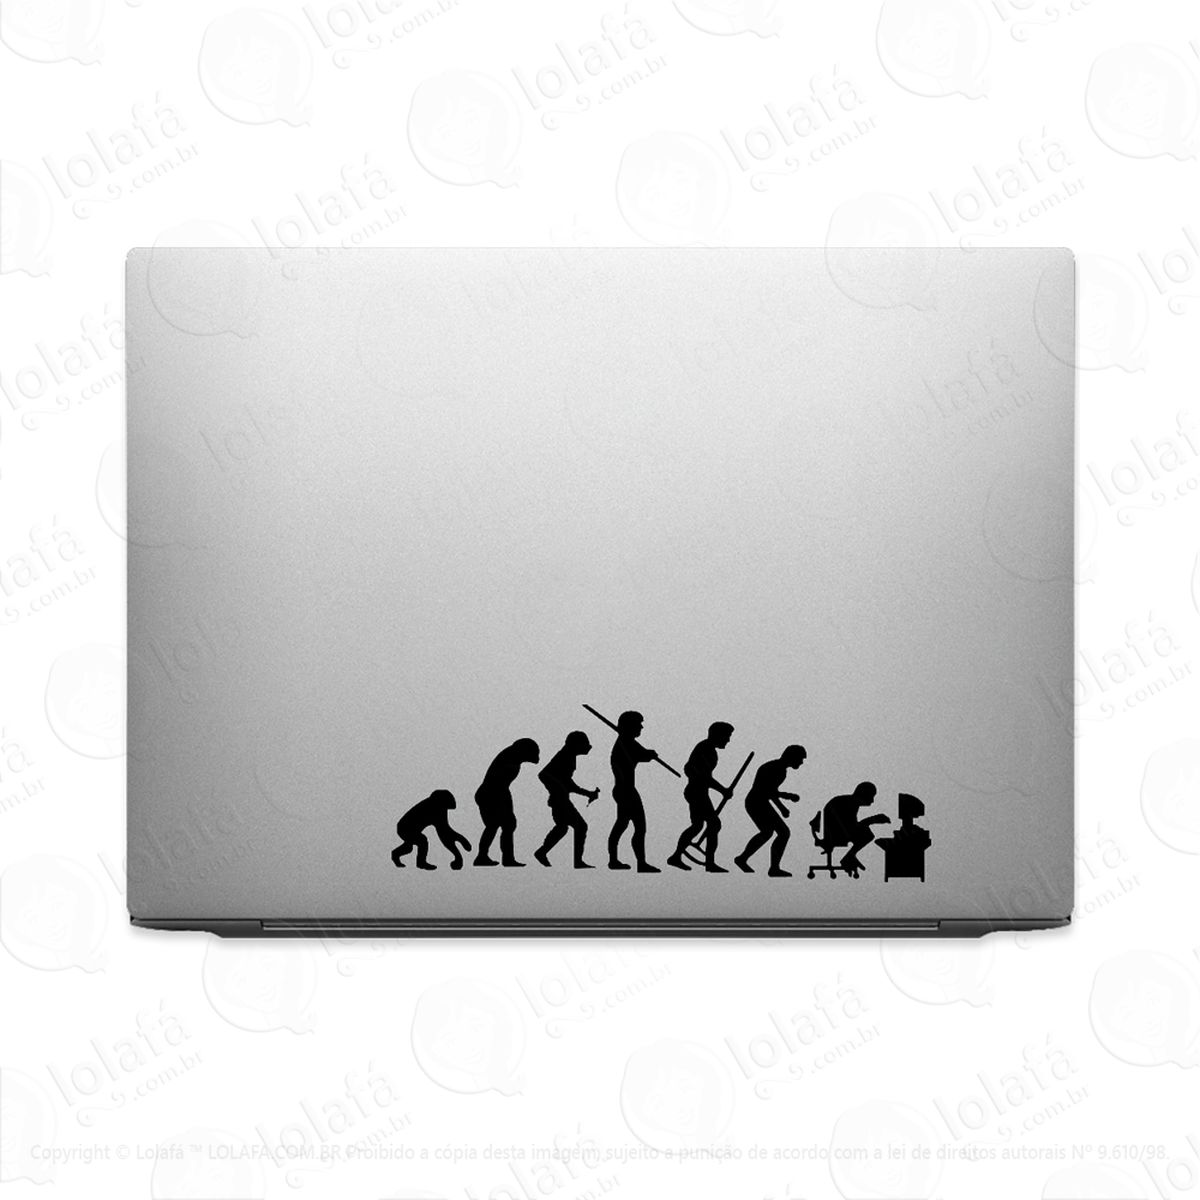 adesivo tablet notebook pc evolução do homem tecnologia mod:2320